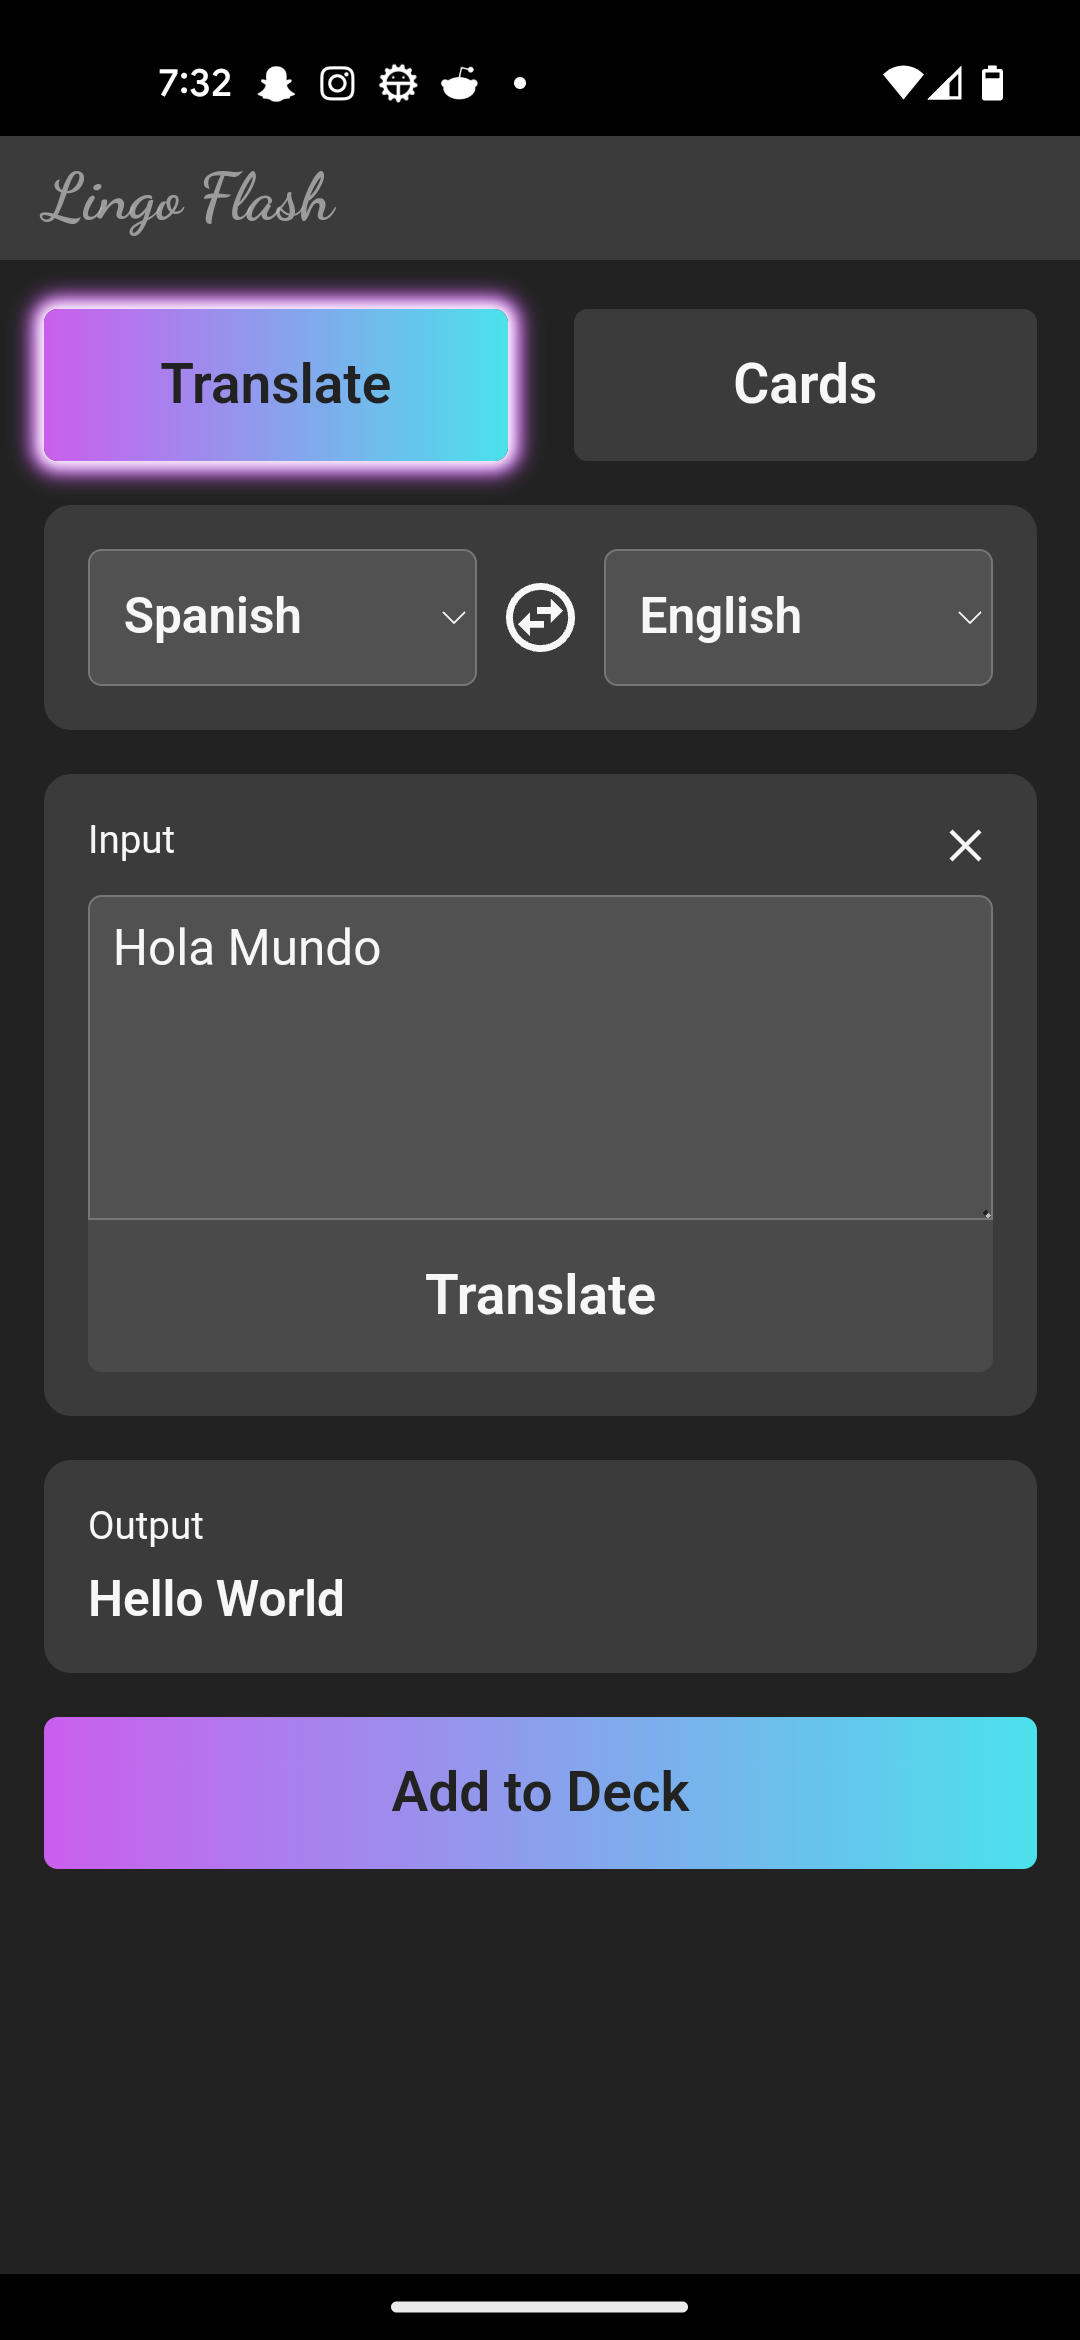 Lingo Flash Translation Example